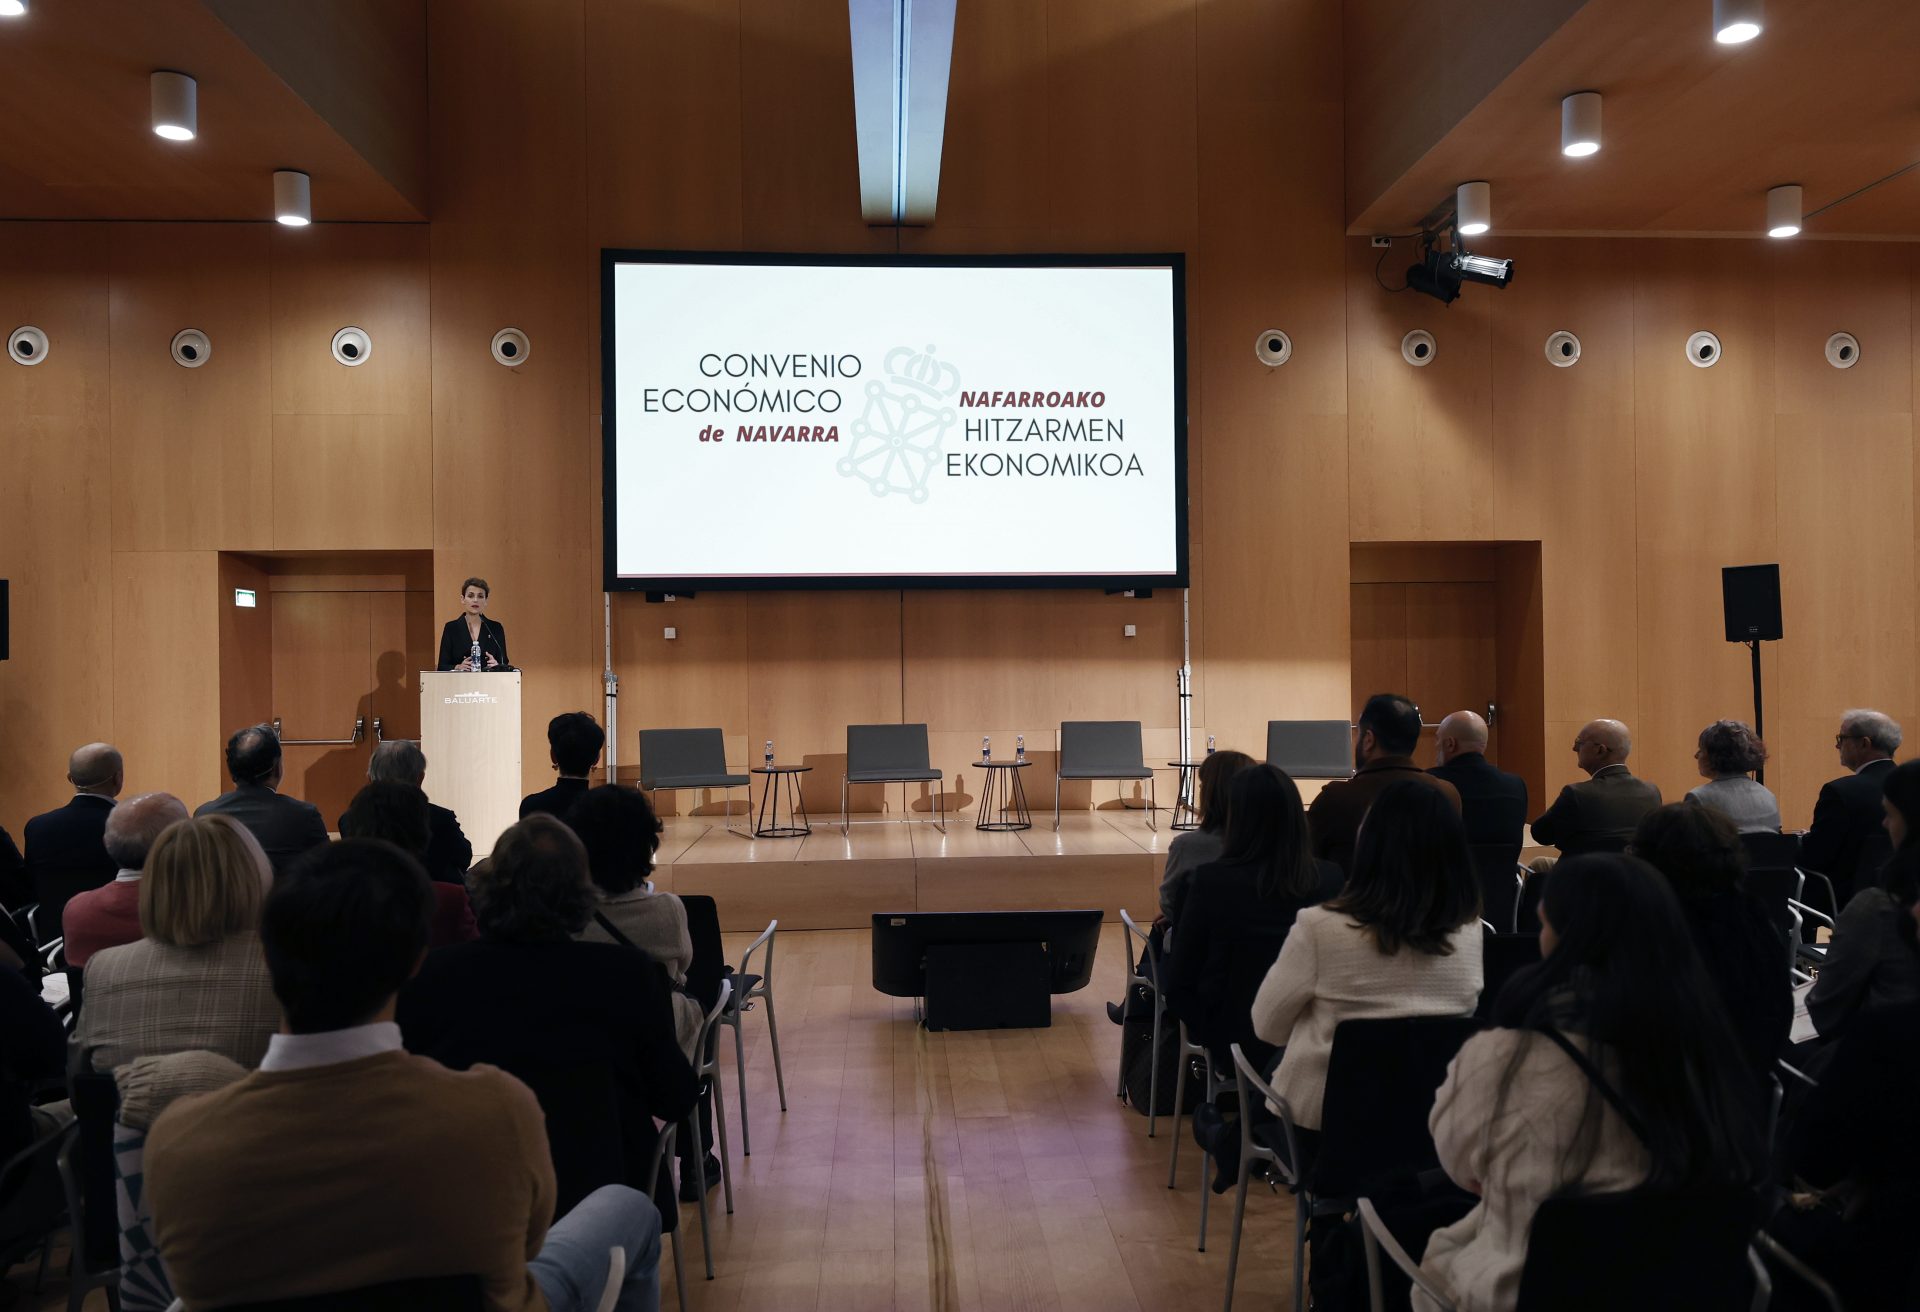 La presidenta de Navarra María Chivite ha inaugurado una jornada sobre el Convenio Económico